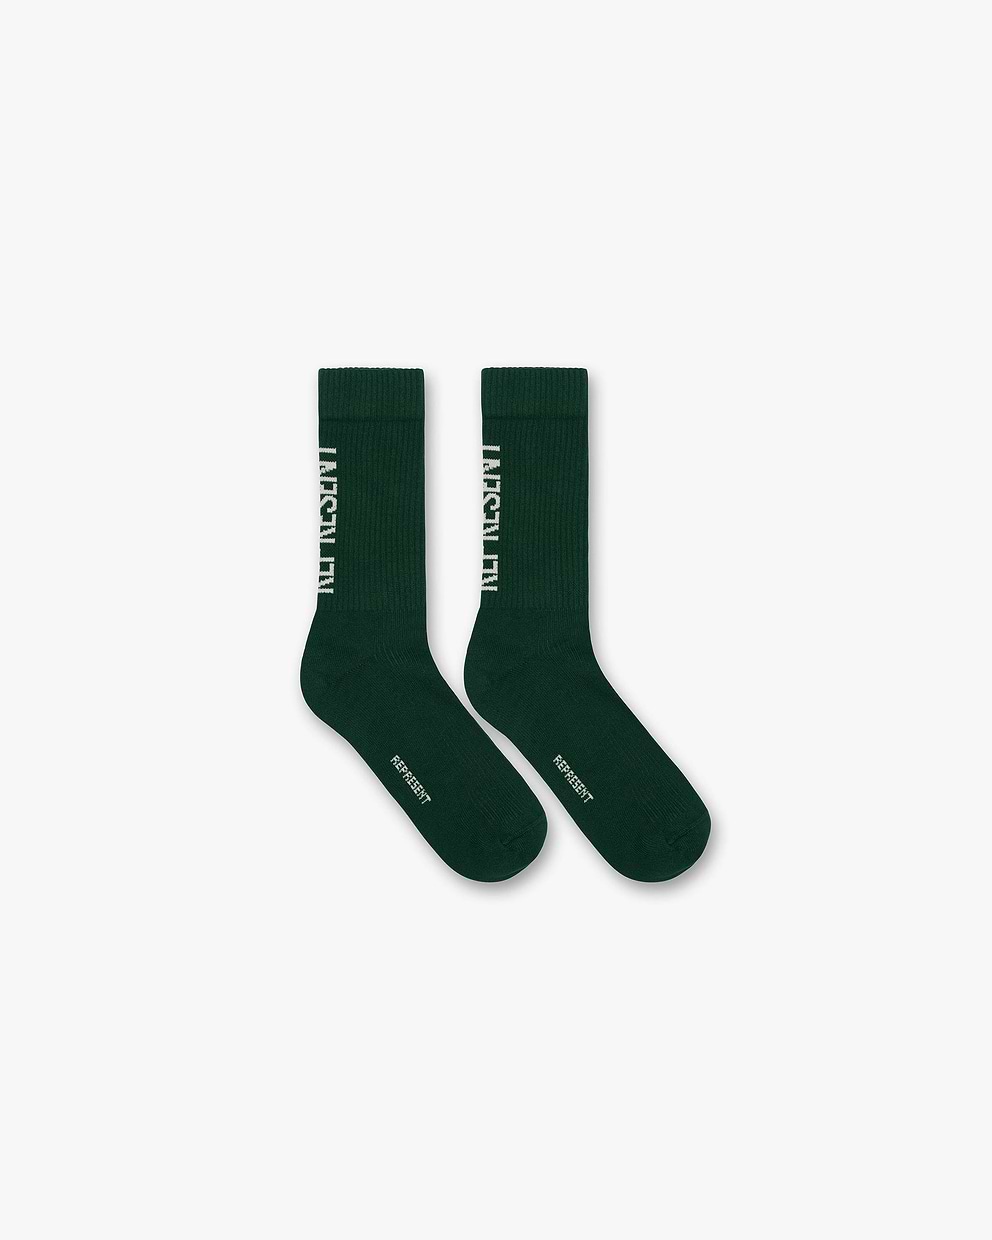 Represent Socks - Racing Green